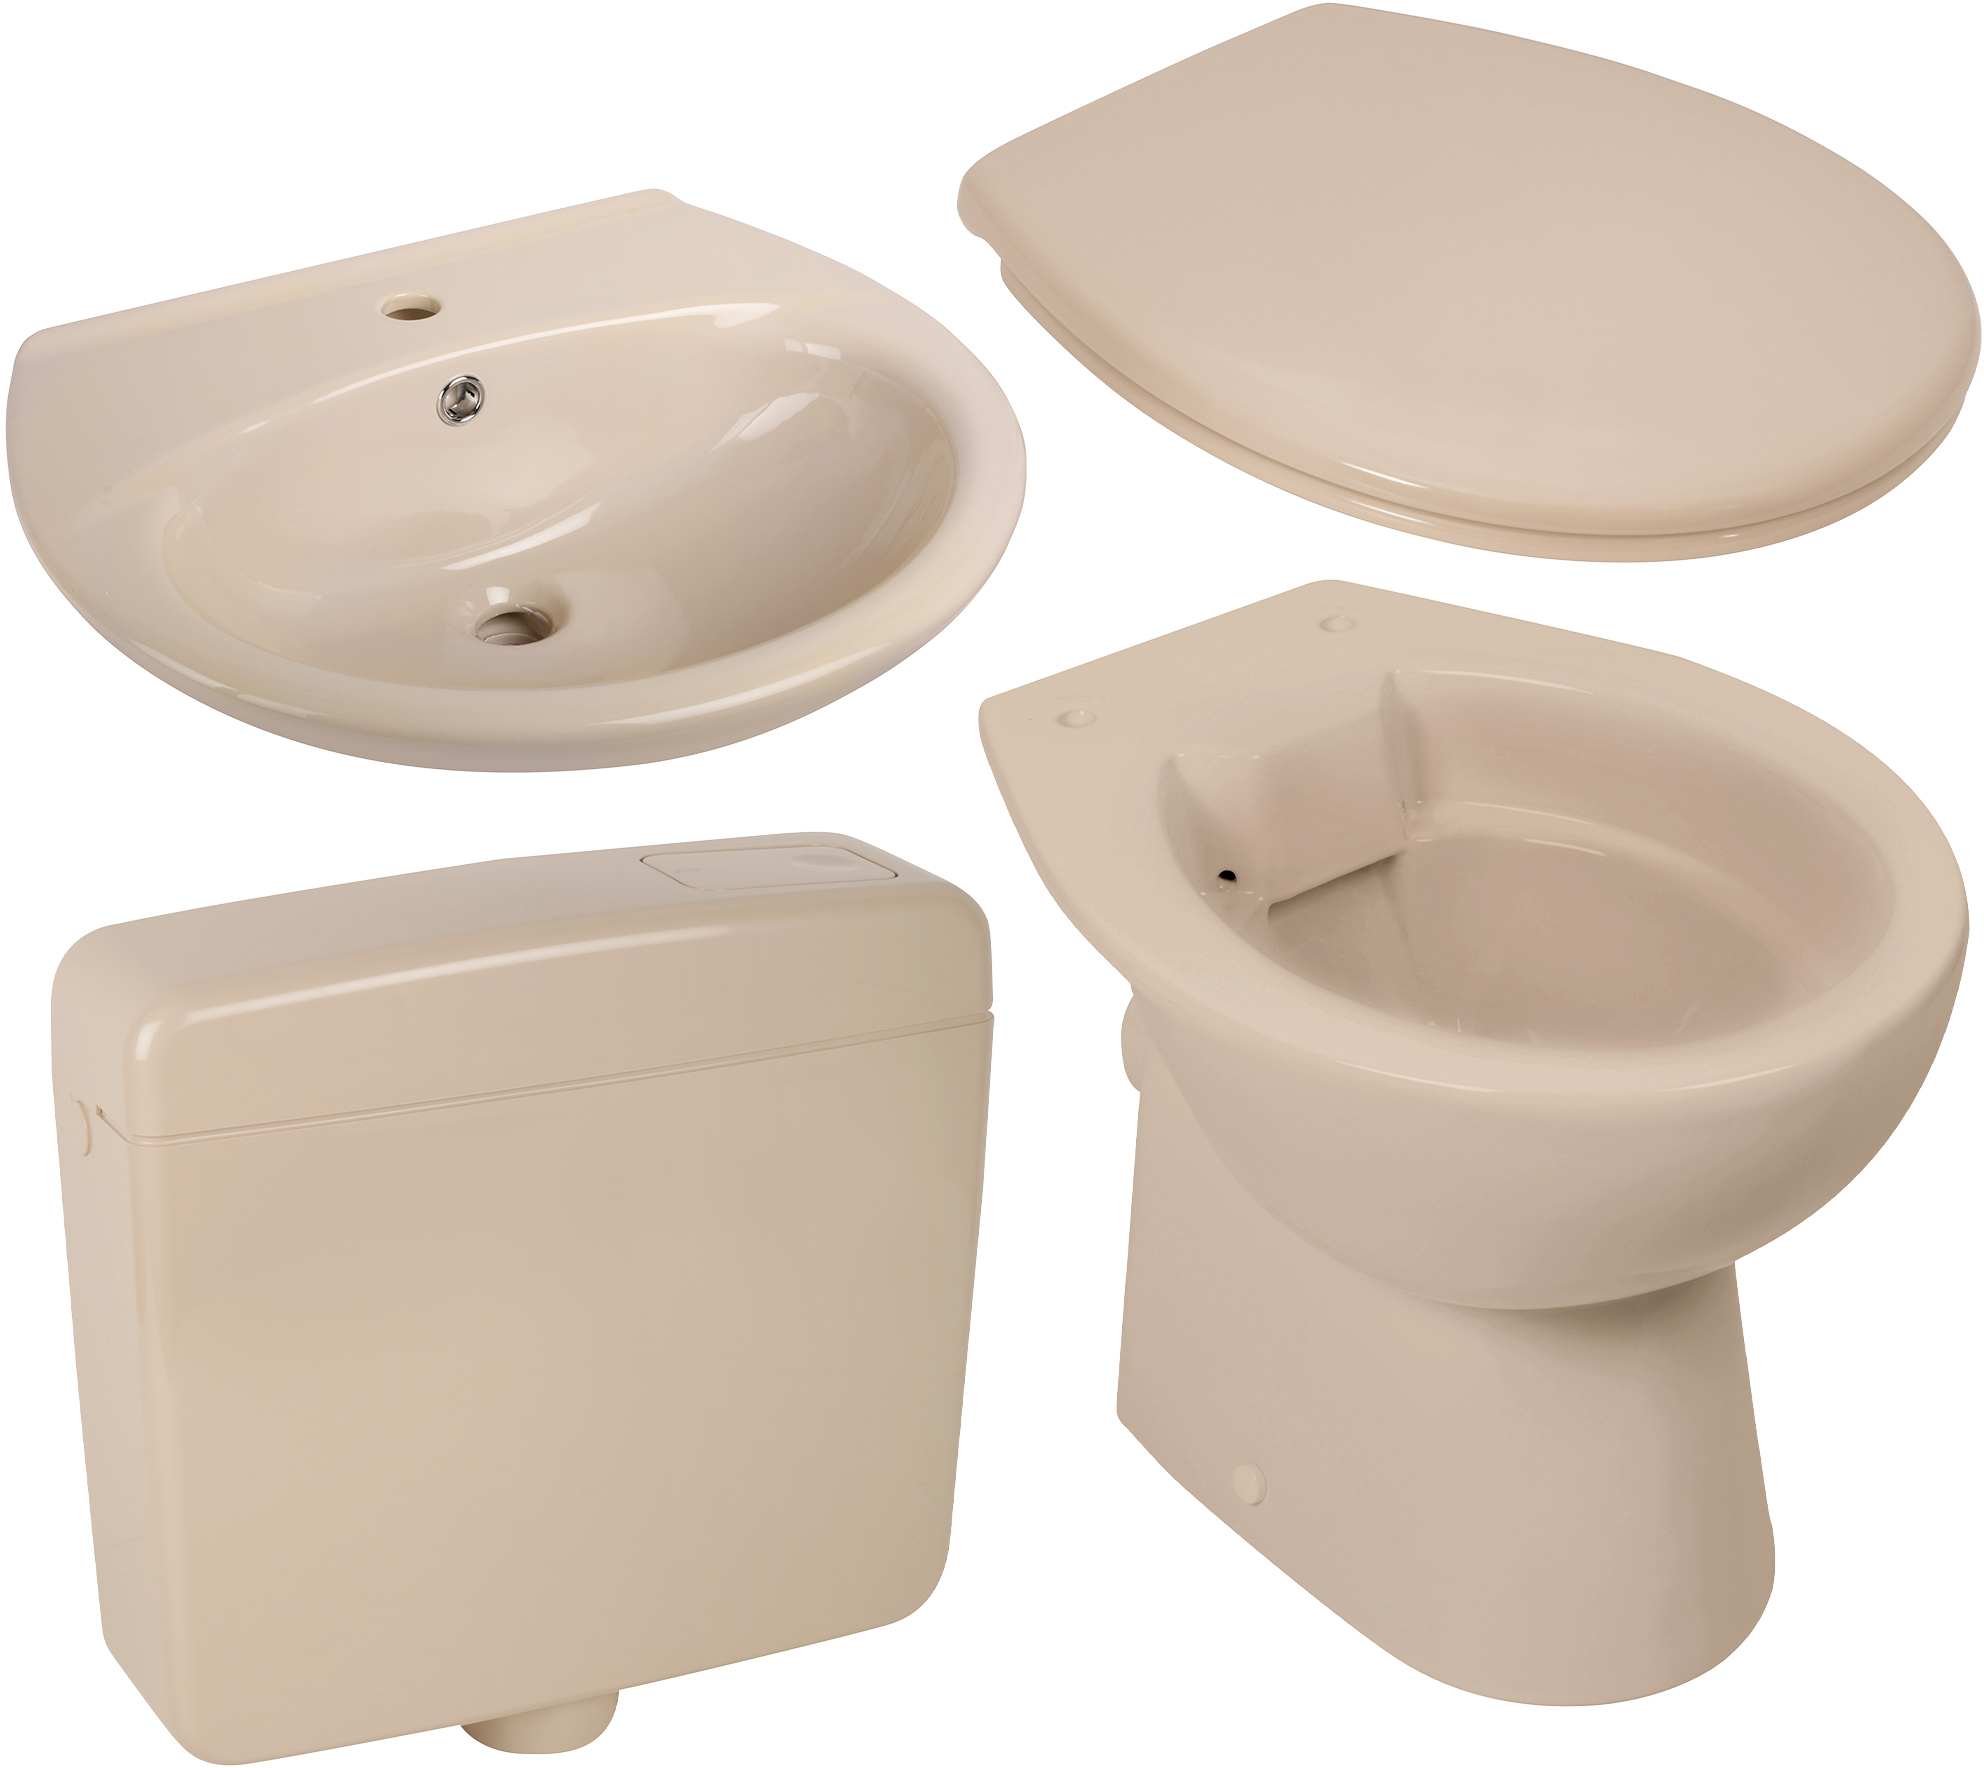 Keramik-Komplettset in Beige mit Stand-WC spülrandlos, WC-Sitz, Spülkasten und Waschtisch 60 cm